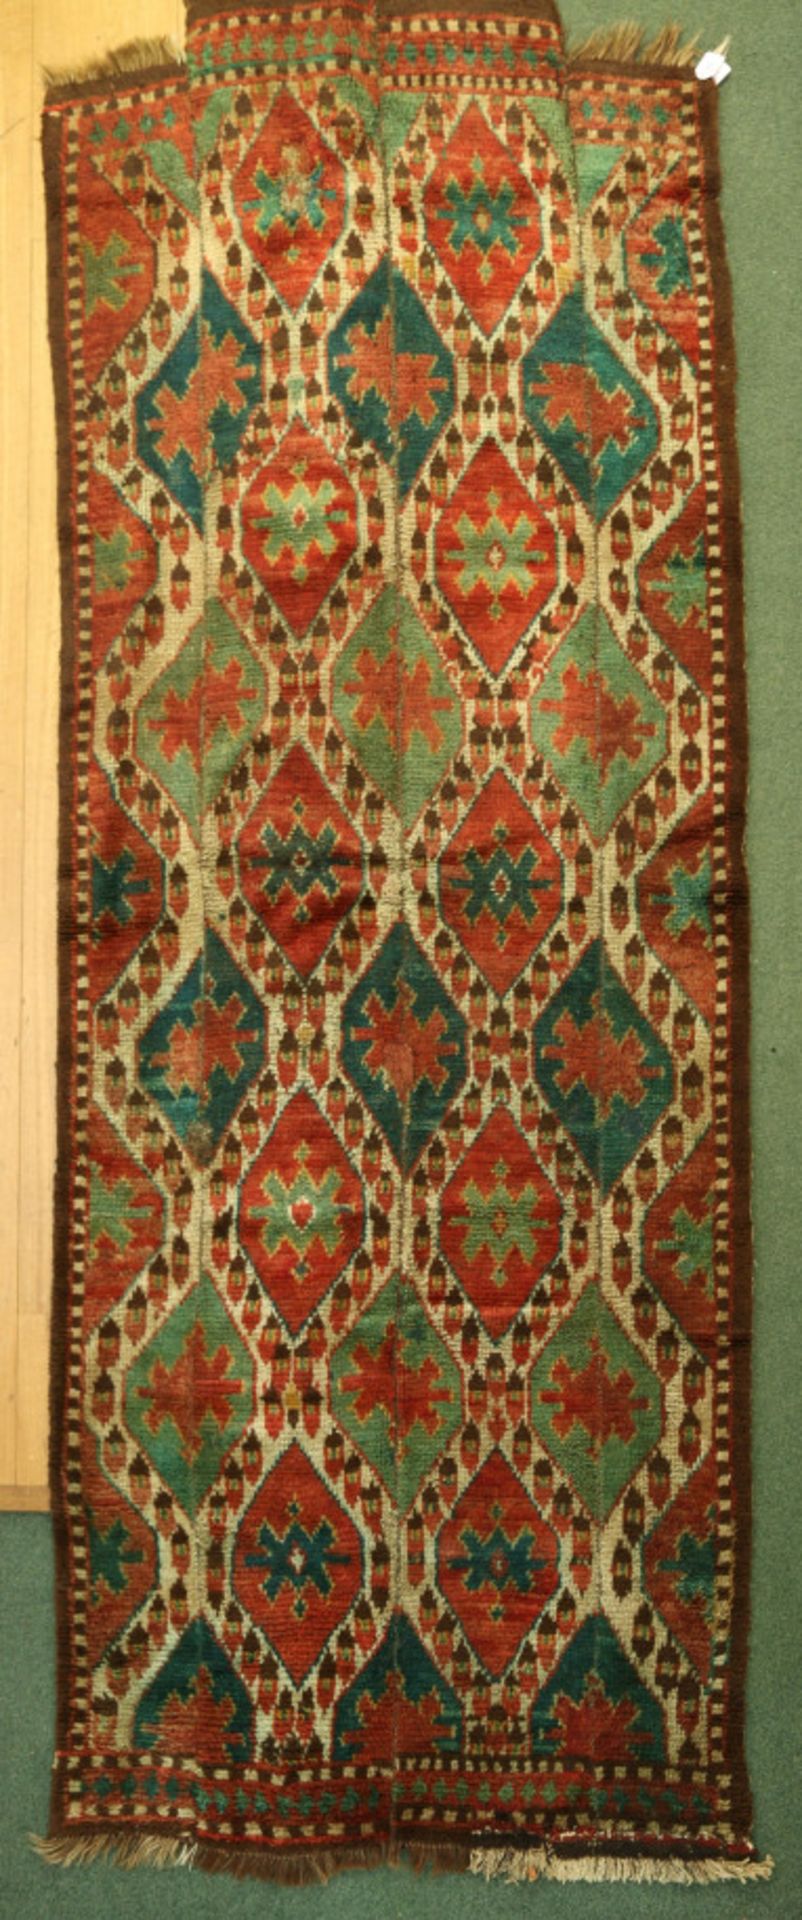 Oezbekistan kleed, Centraal Azië, tweede helft 19de eeuw,